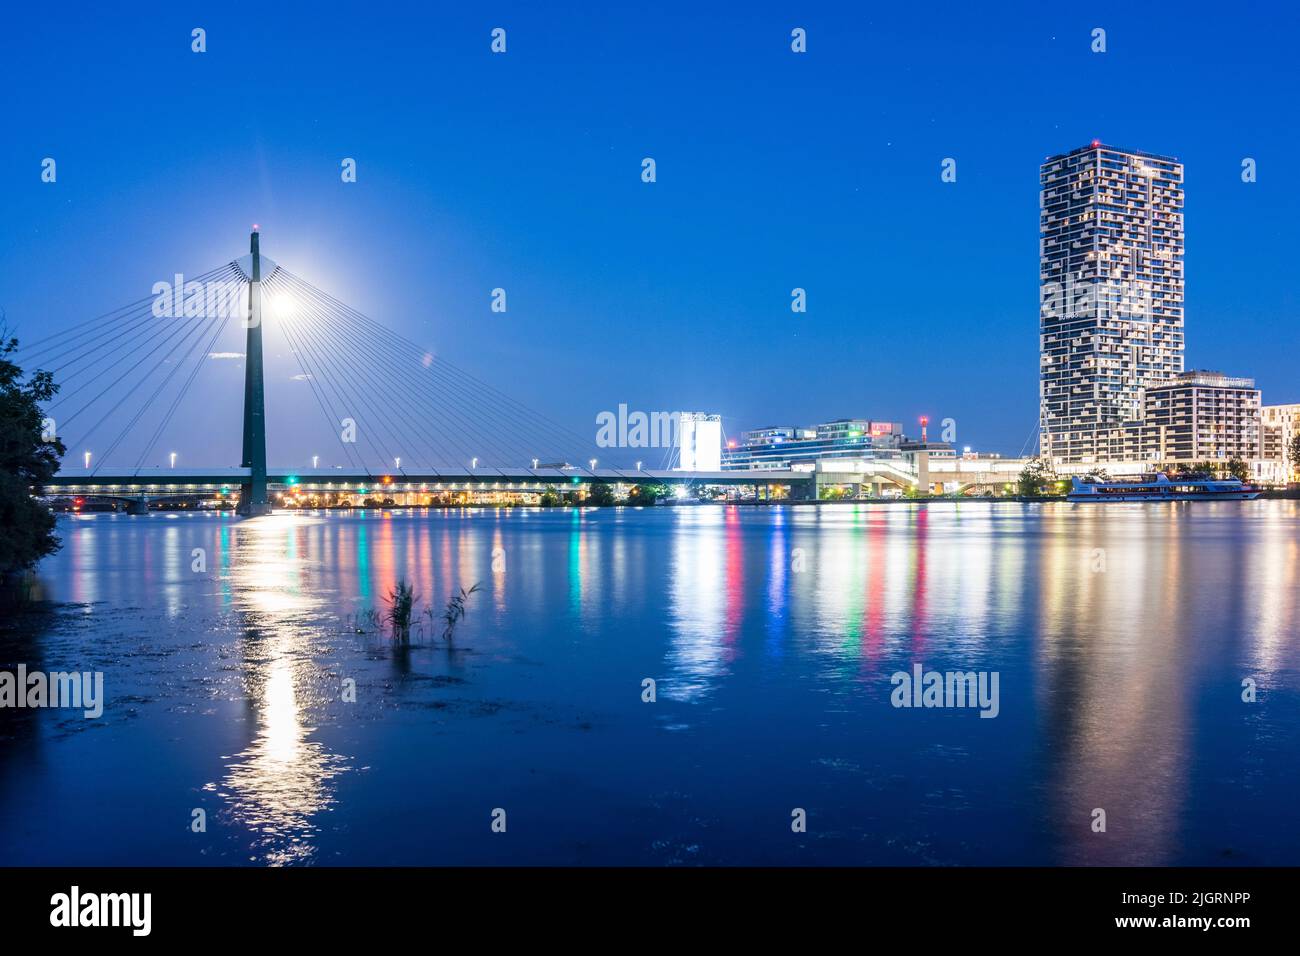 Wien, Vienne: rivière Donau (Danube), tour de la Marina, pont de métro Donaustadtbrücke, pleine lune, vue de l'île de Donauinsel en 02. Leopoldstadt Banque D'Images